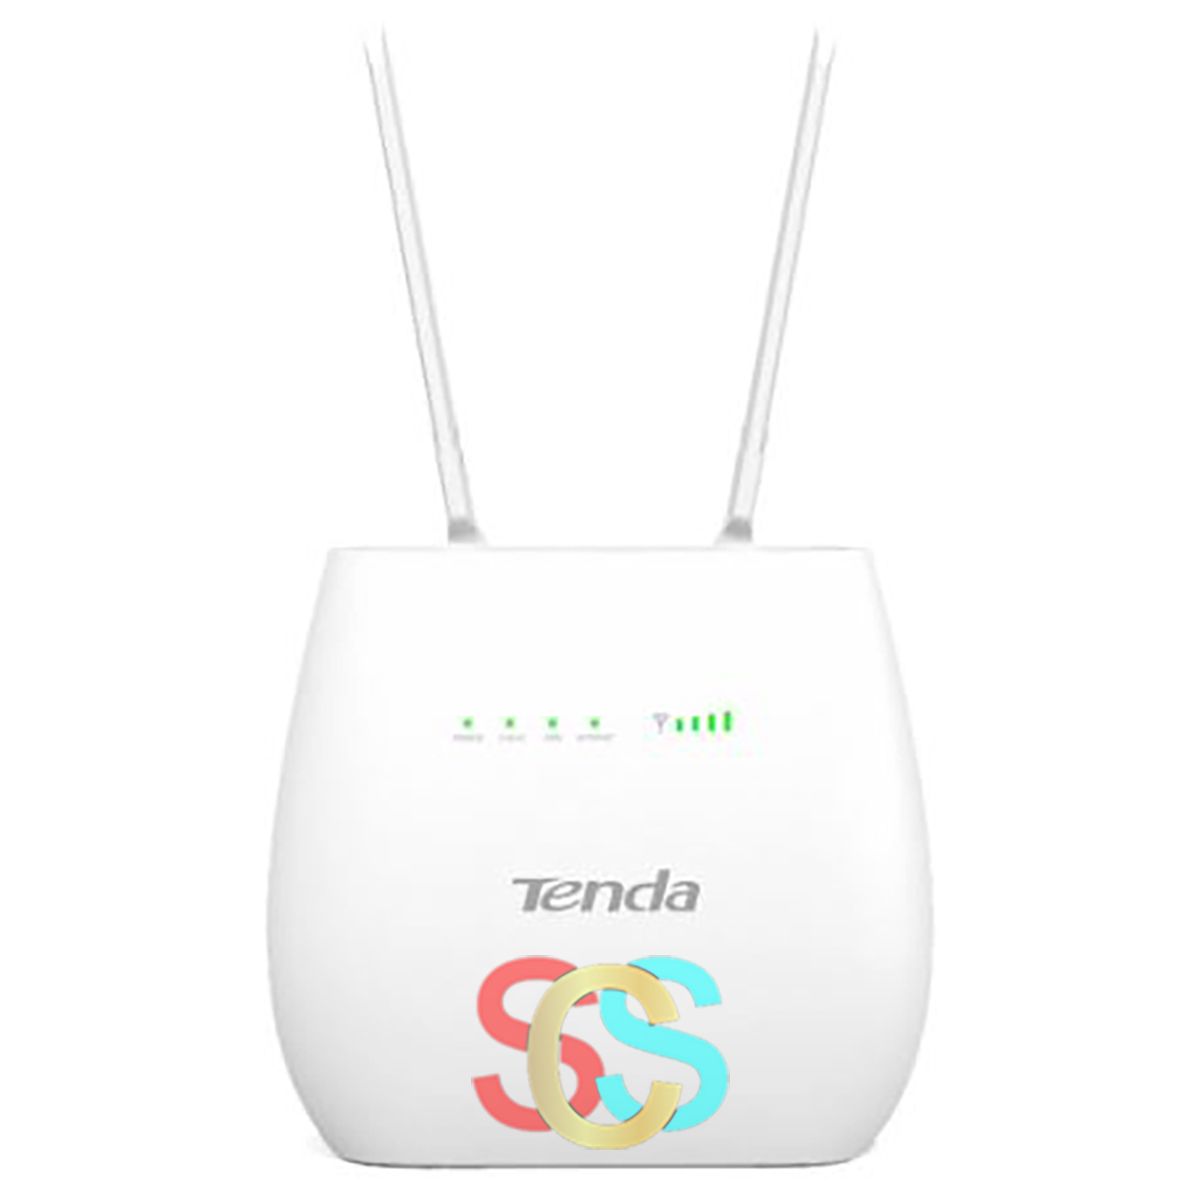 Brand - Tenda Model - Tenda 4G680 Router Type - Wireless & Ethernet LAN Network Standard - 10/100 WAN Newtork Standard - 10/100 Data Transfer Rates (WiFi) - 300 Mbps Data Transfer Rate (Lan) - 100 Mbps